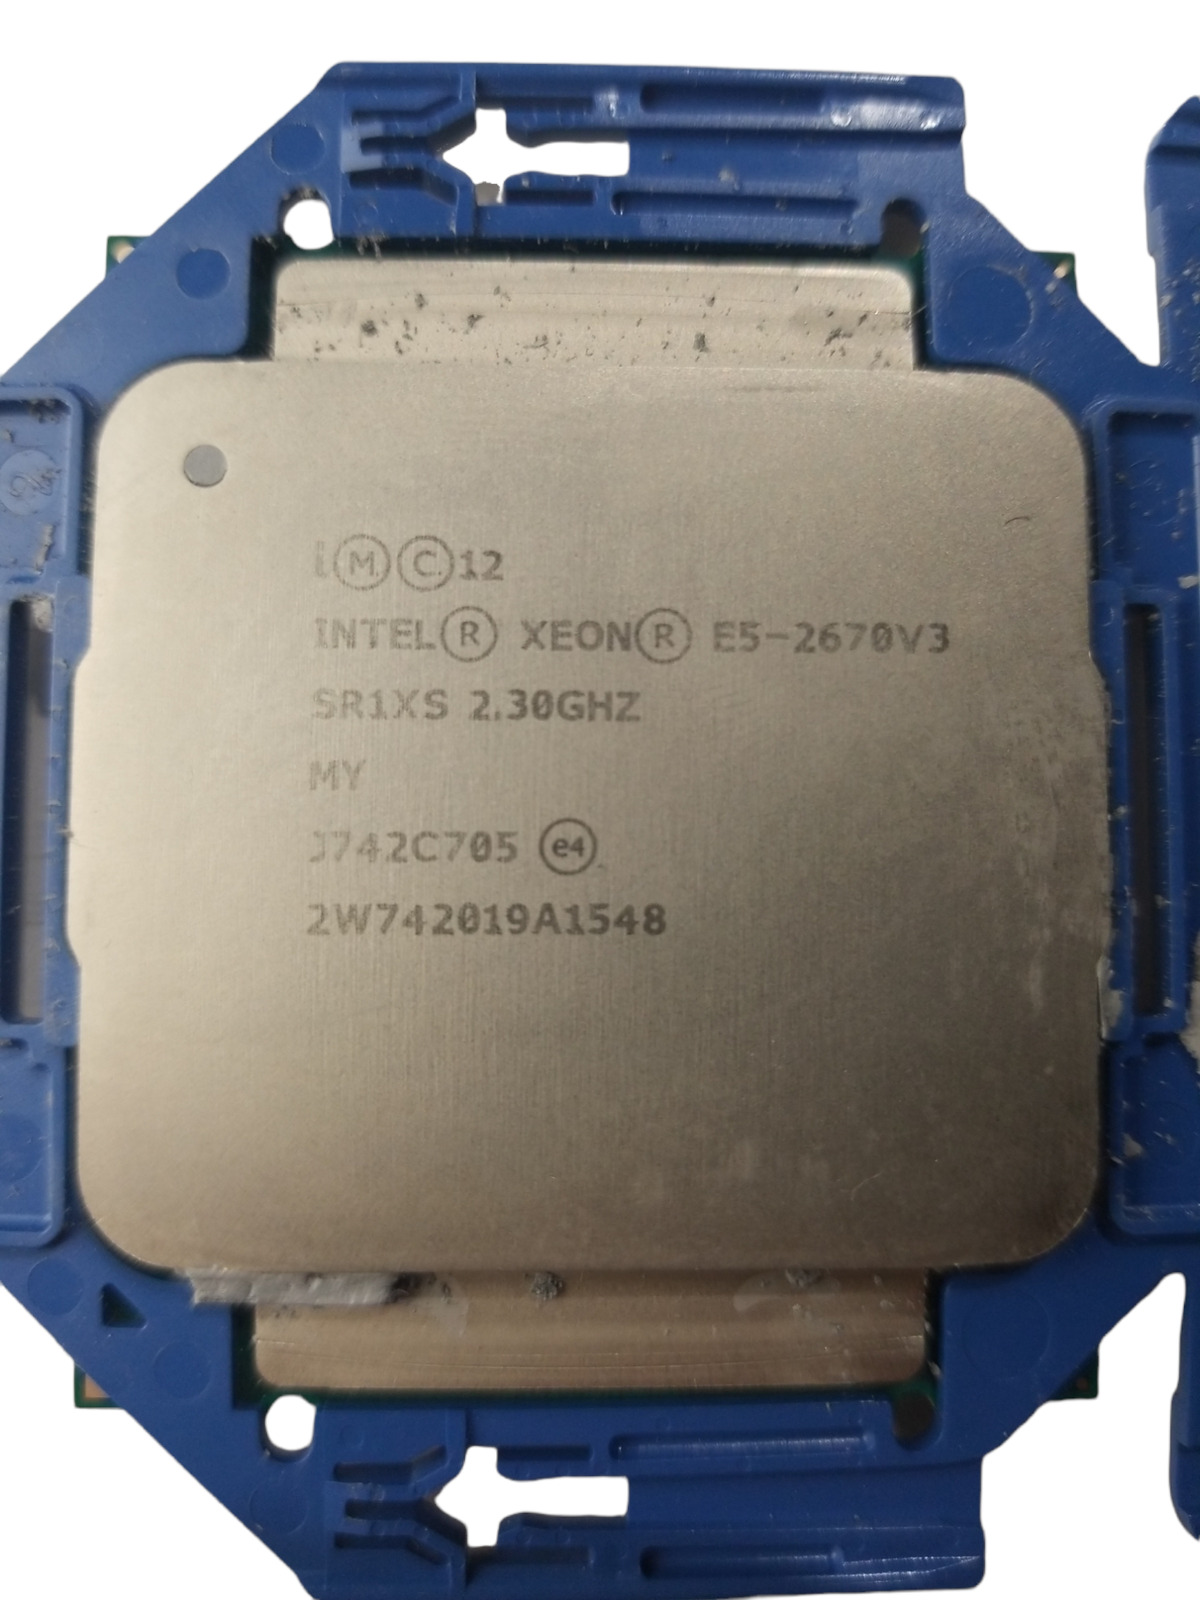 Intel Xeon E5-2670 V3 2.3GHz SR1XS 12-Core CPU Processor 